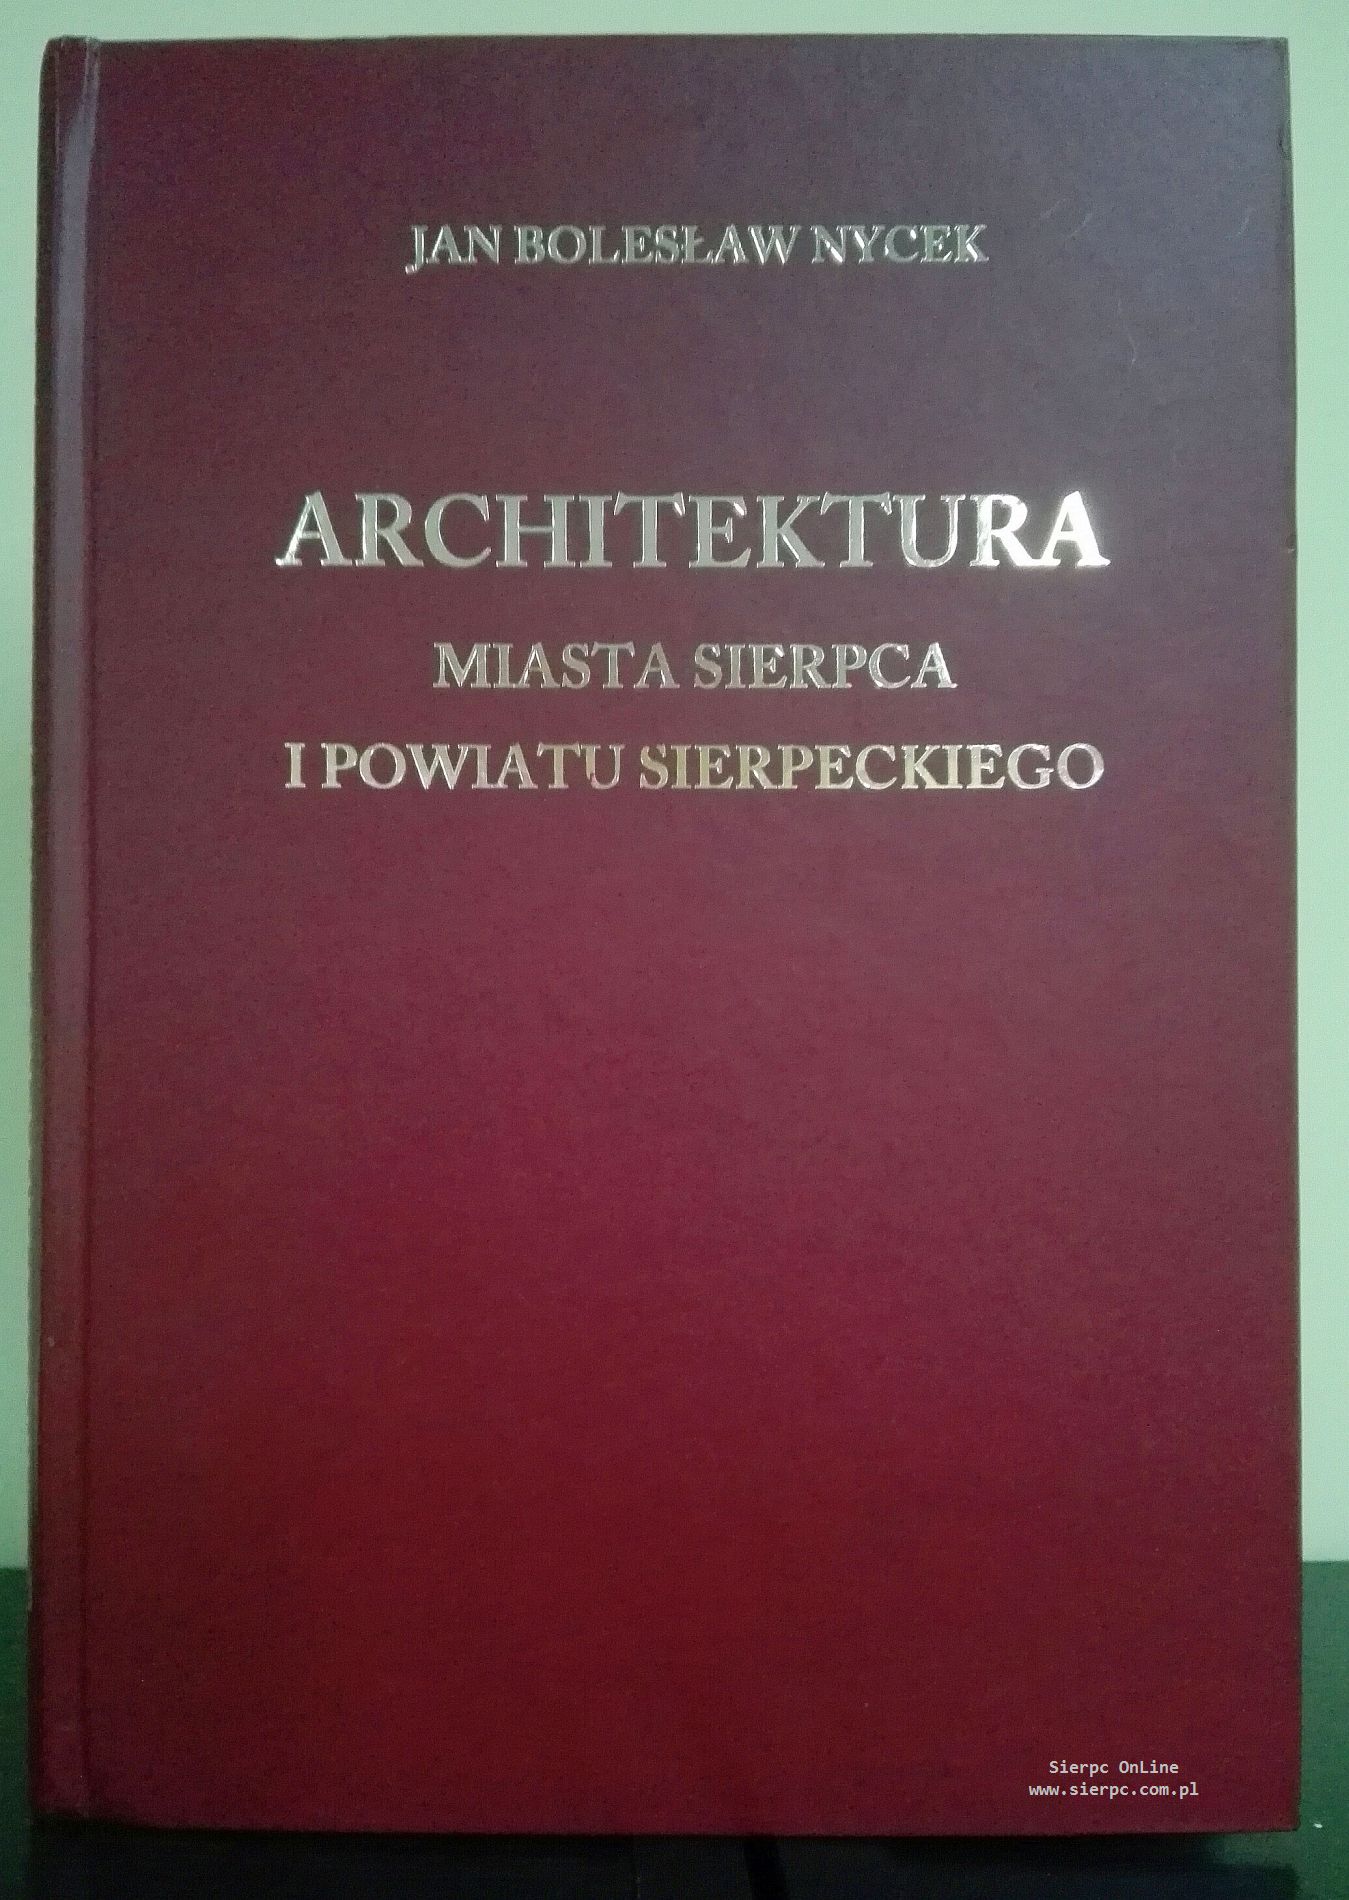 Jan Bolesaw Nycek, Architektura miasta Sierpca i powiatu sierpeckiego, Marow – Jan Bolesaw Nycek, Pock 2016, 192 s.; il.